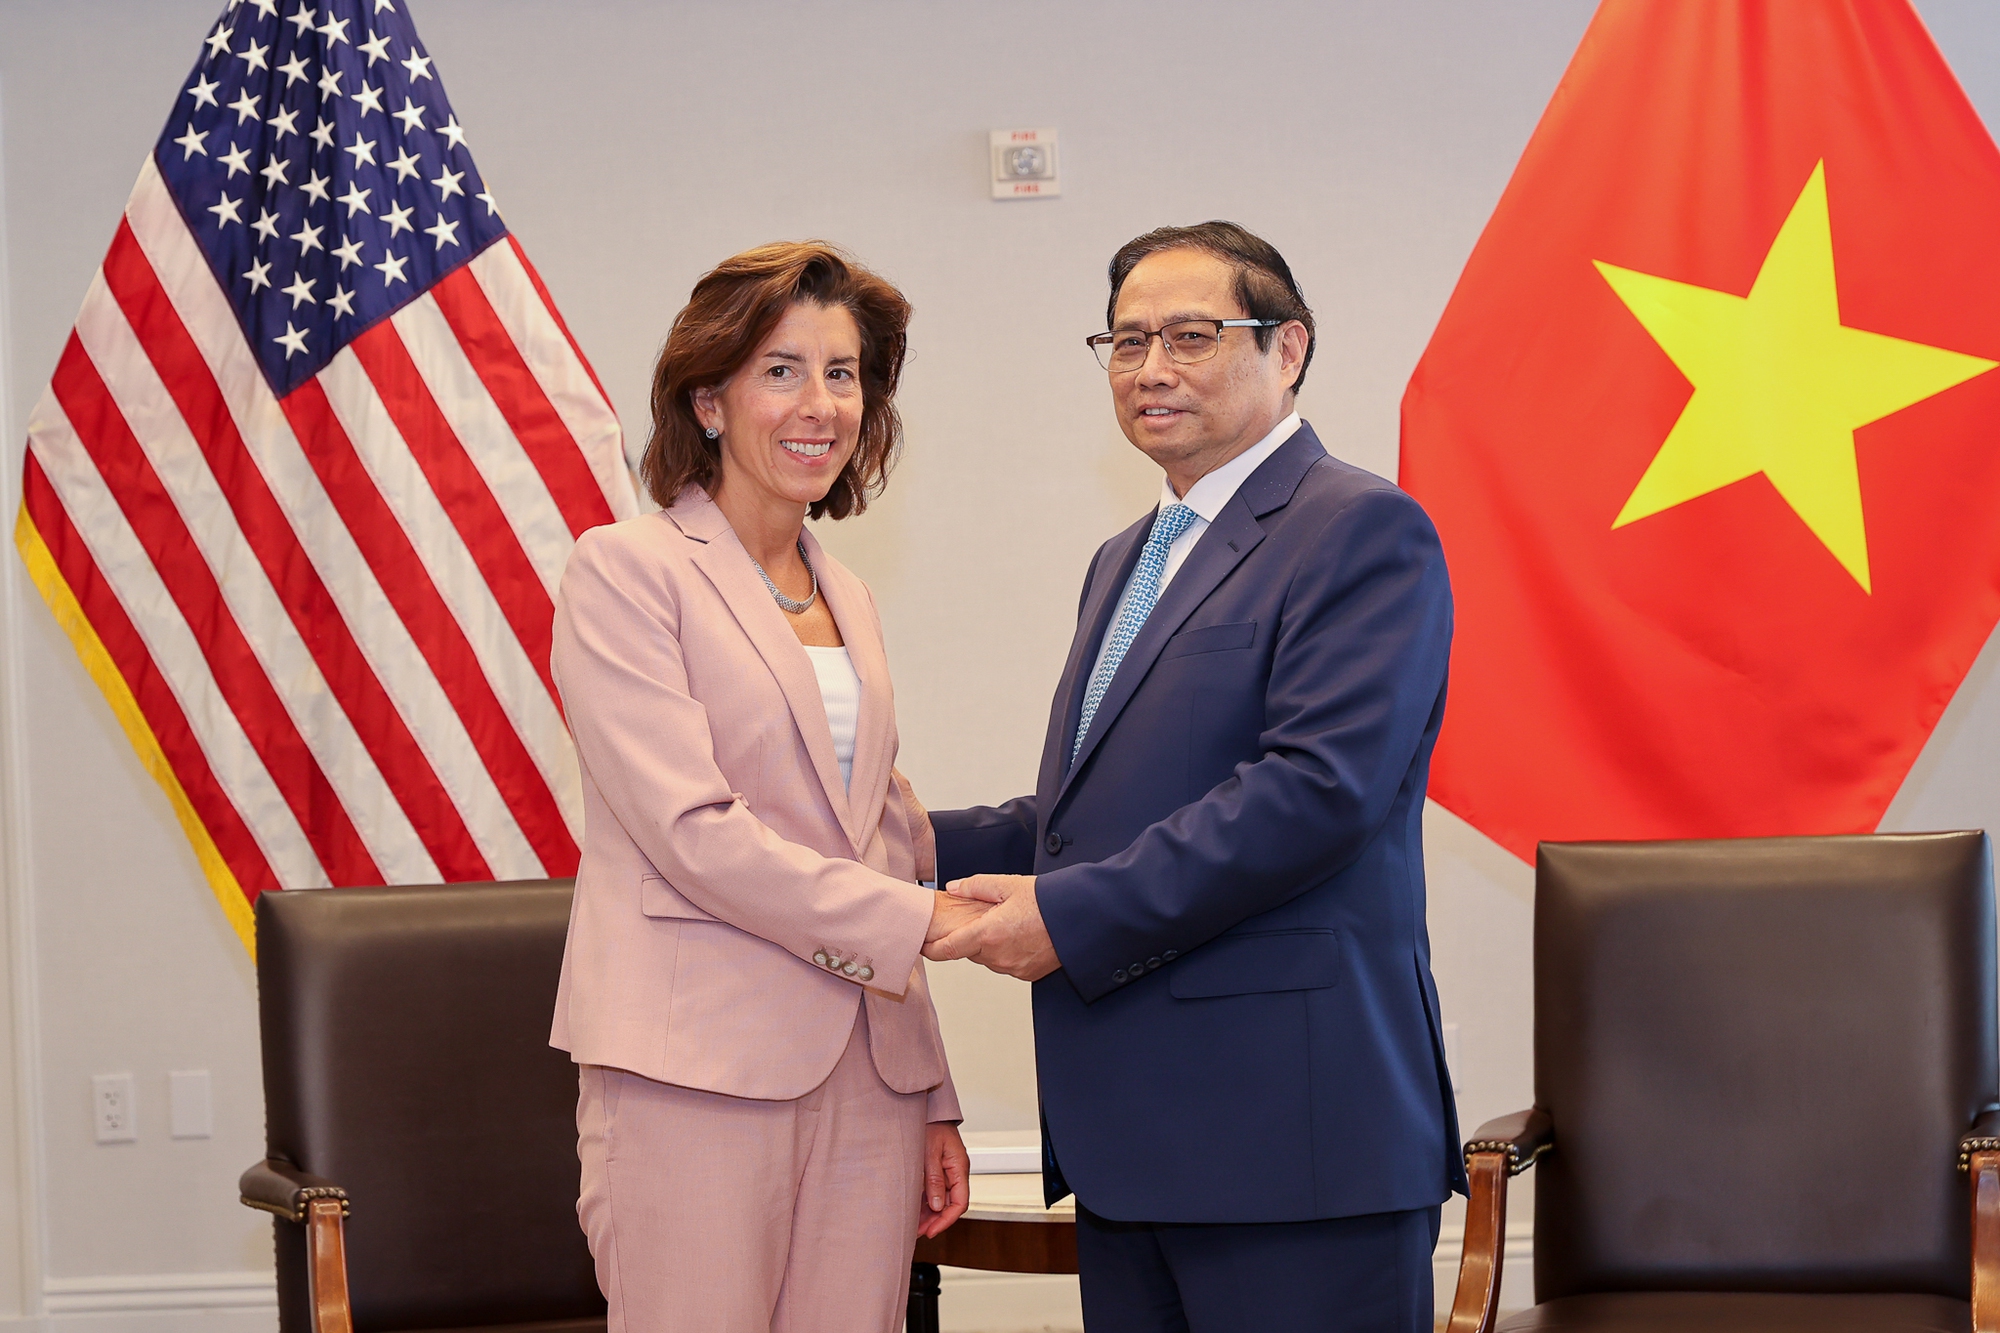 Thúc đẩy Hoa Kỳ sớm công nhận quy chế kinh tế thị trường của Việt Nam, đưa quan hệ hai nước ngày càng phát triển sâu rộng, thực chất, hiệu quả - Ảnh 1.